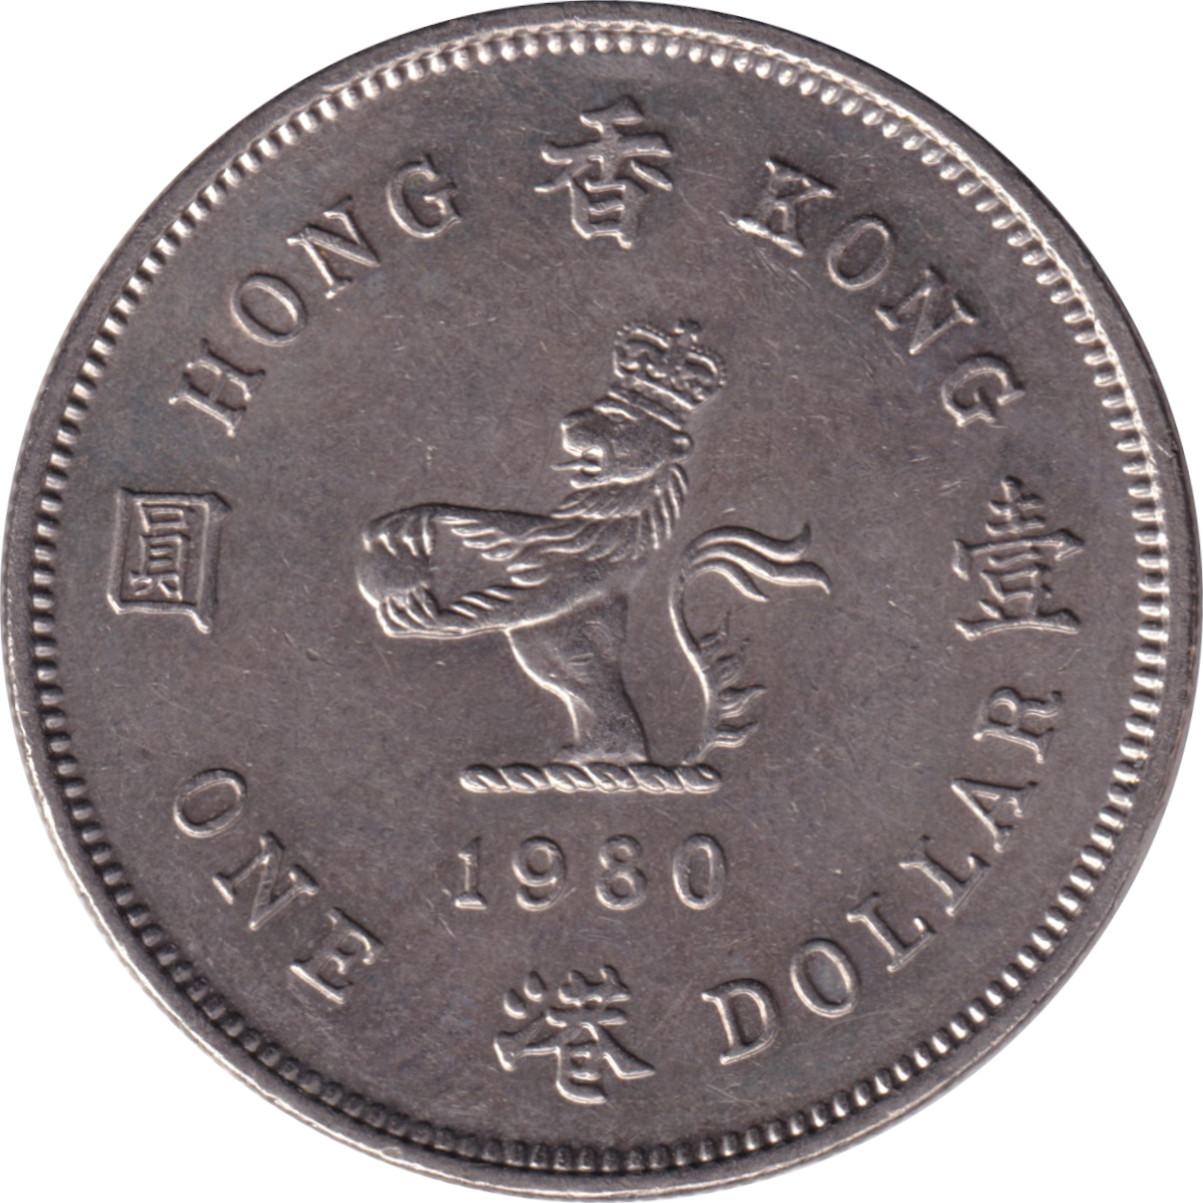 1 dollar - Elizabeth II - Mature bust